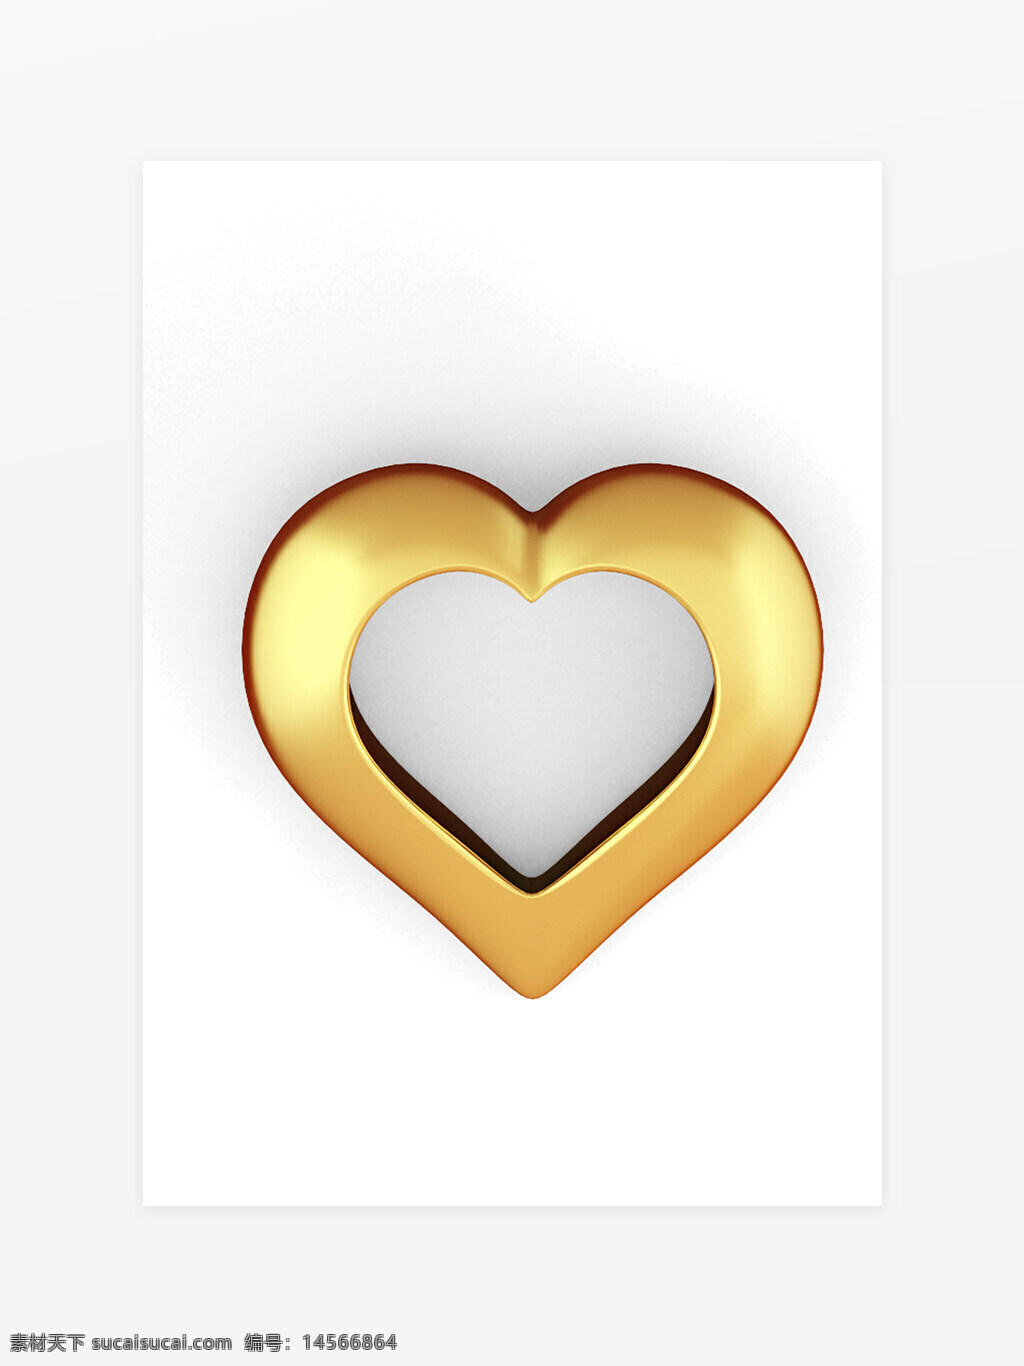 黄金心形元素 黄金心形 金心 爱心 心